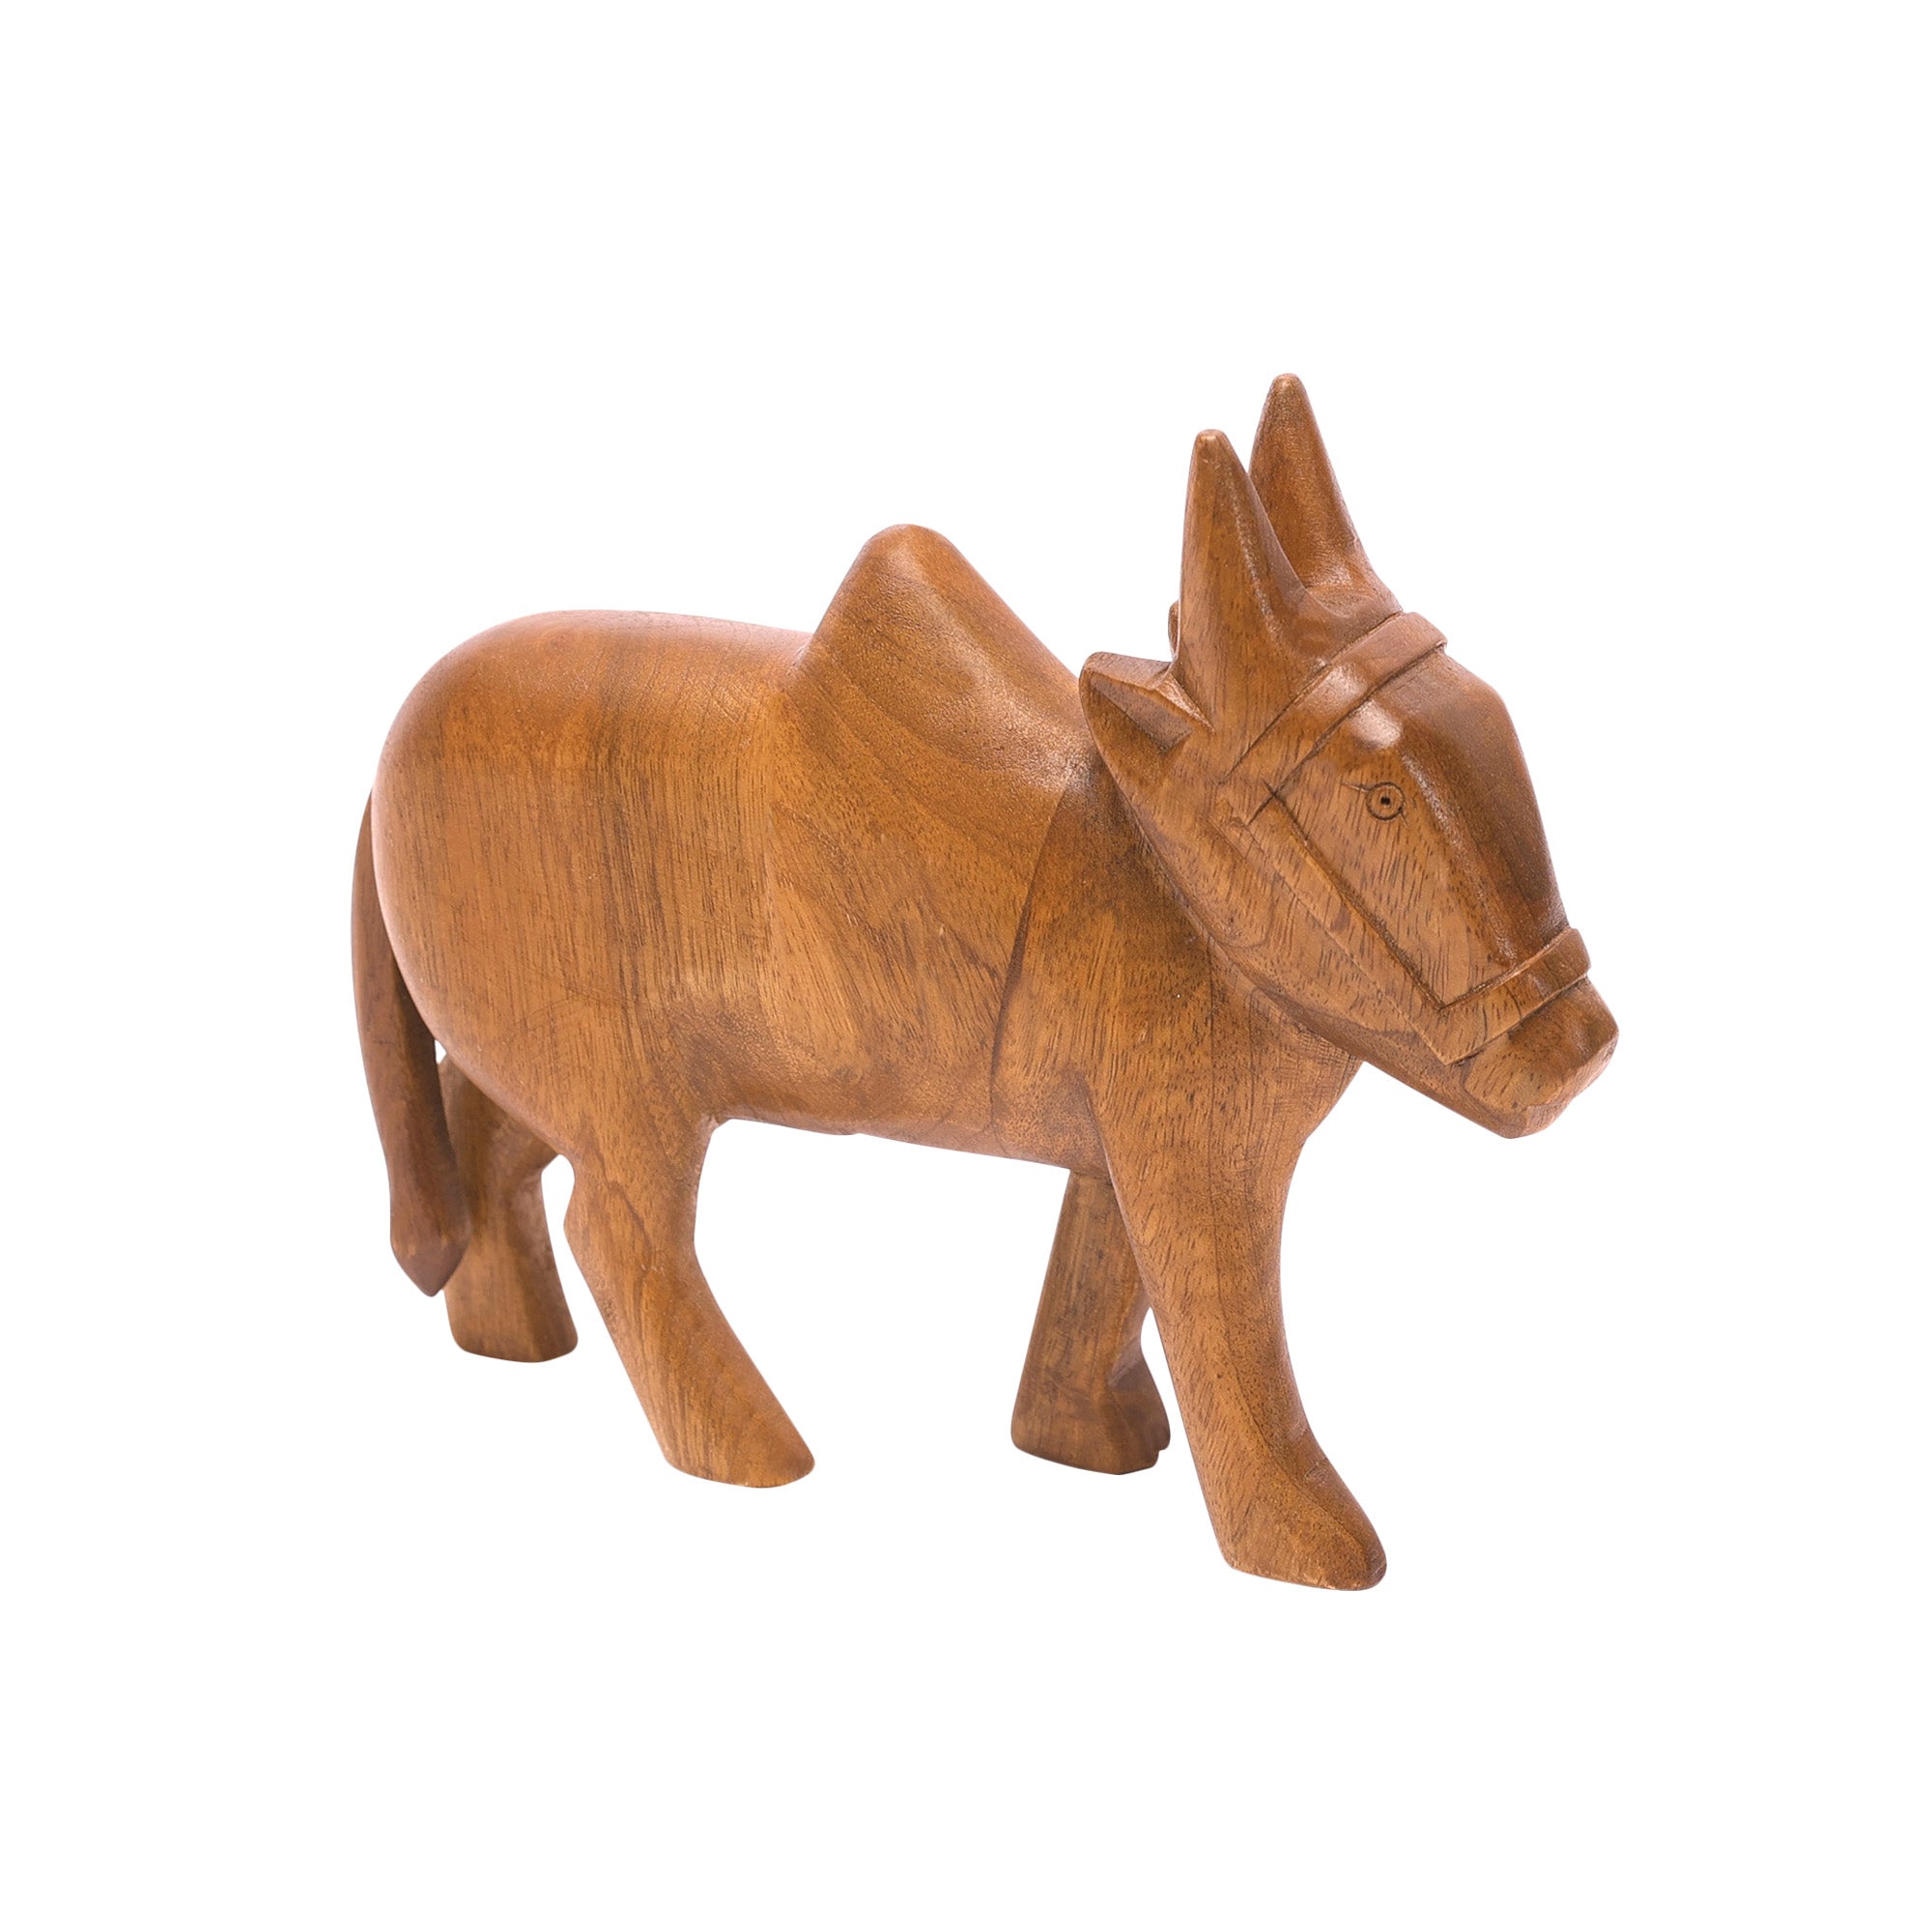 Wooden Detailed Cow Showpiece Animal Figurine